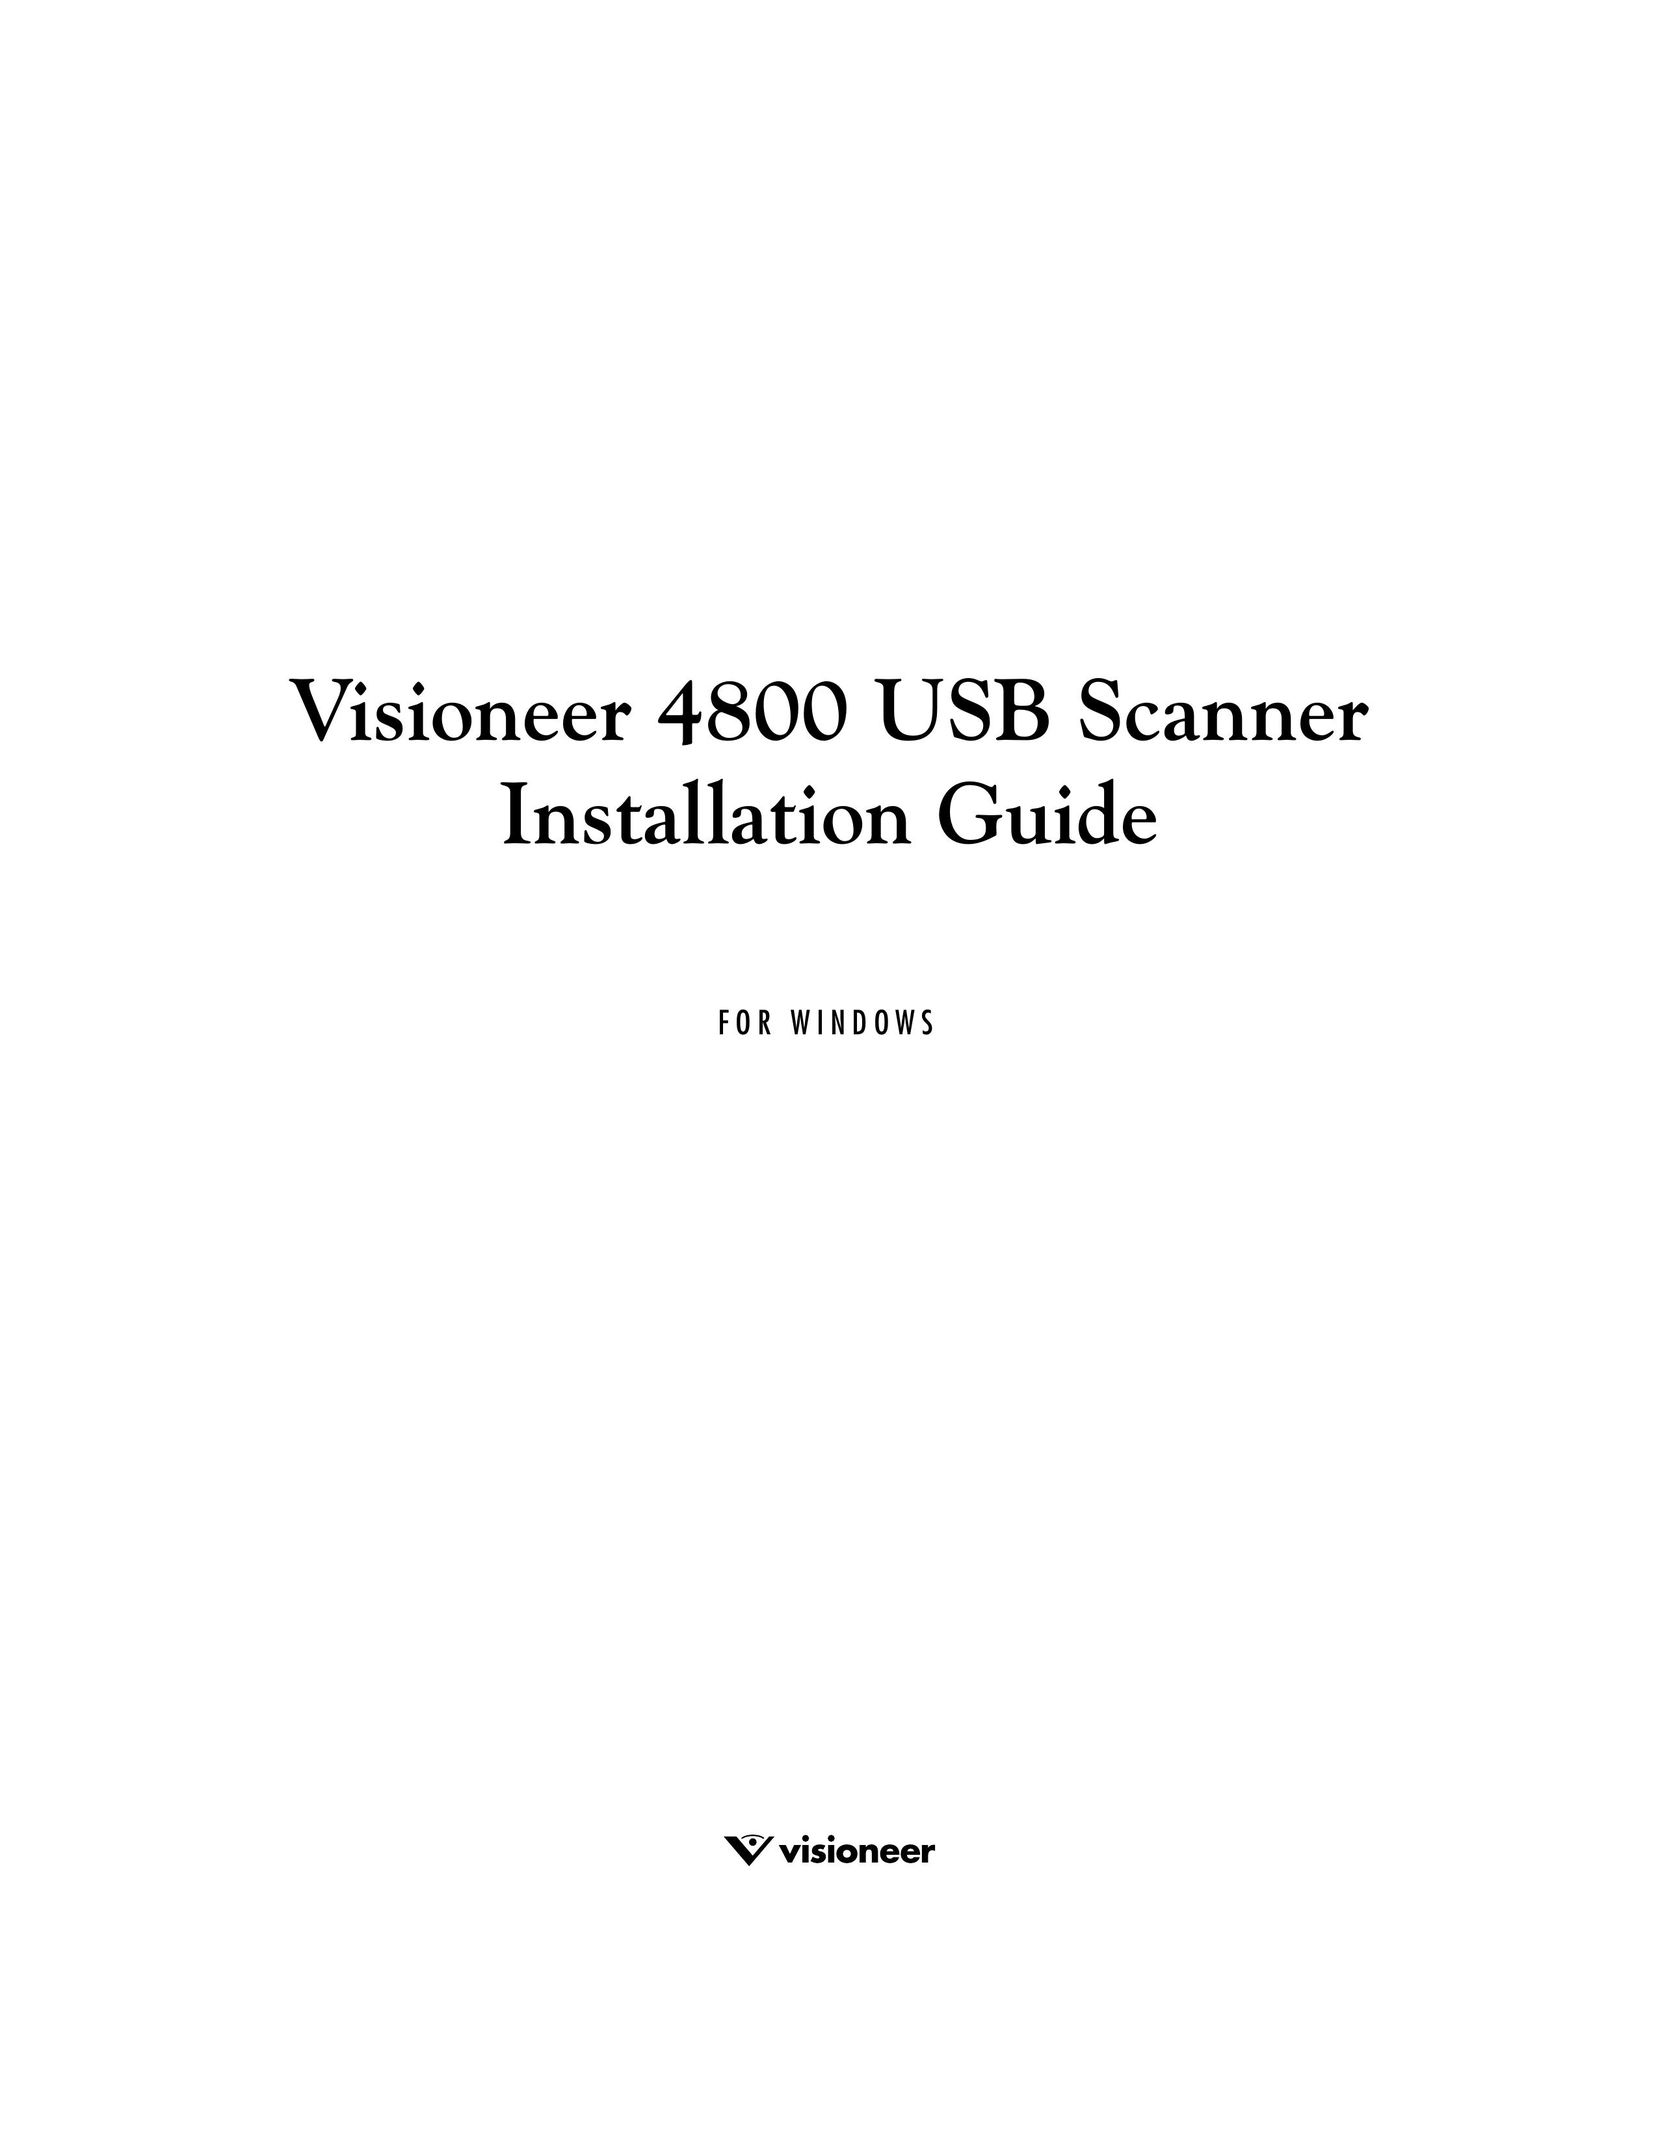 Visioneer 4800 USB Scanner User Manual